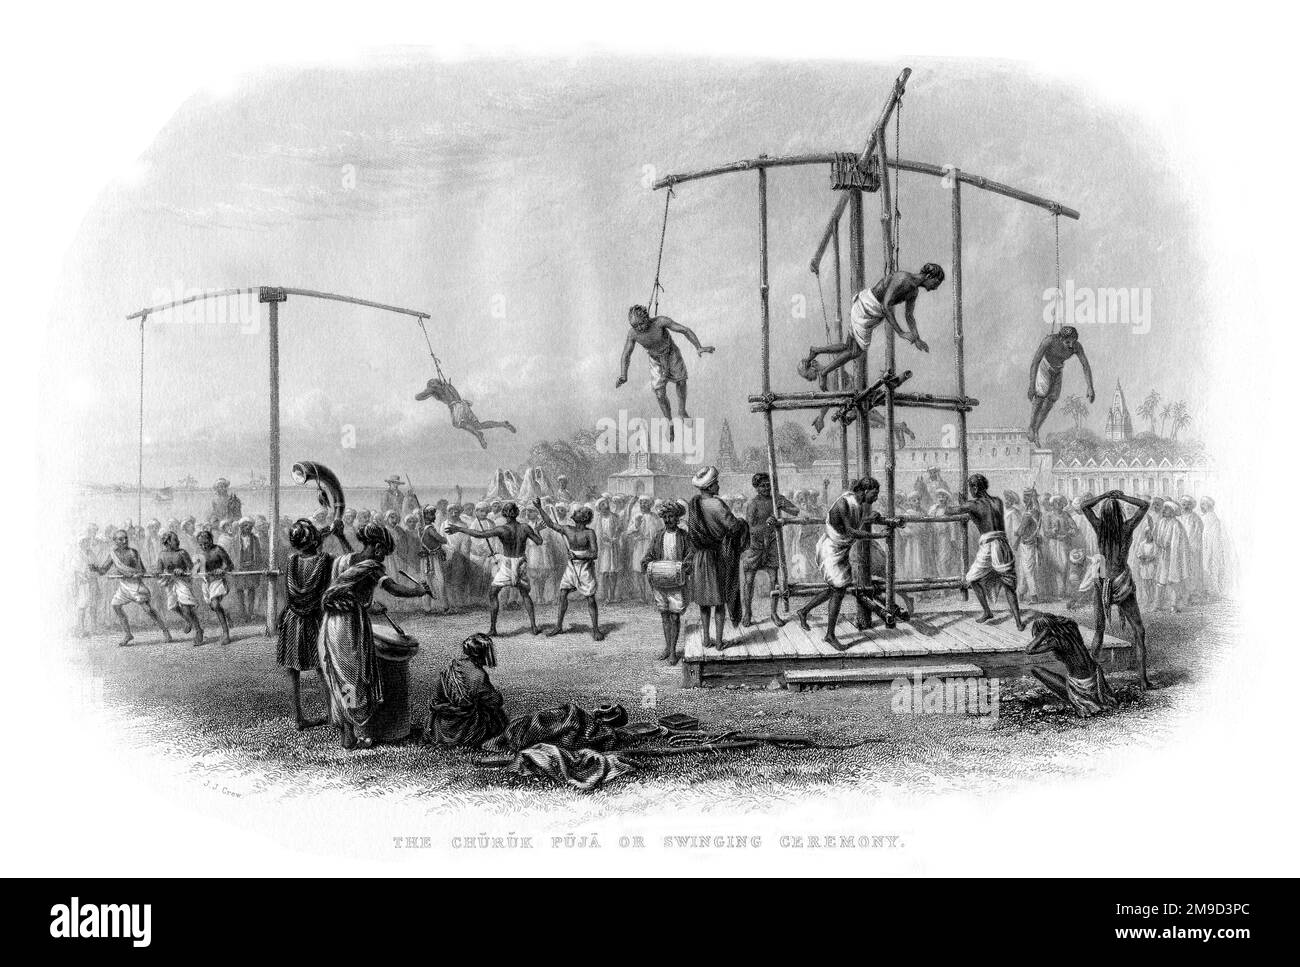 Der Churuk Puja, oder die Schaukelzeremonie. Personen werden aufgehängt und dann am Ende von Stangen gedreht, die hoch in der Luft hängen. Stockfoto